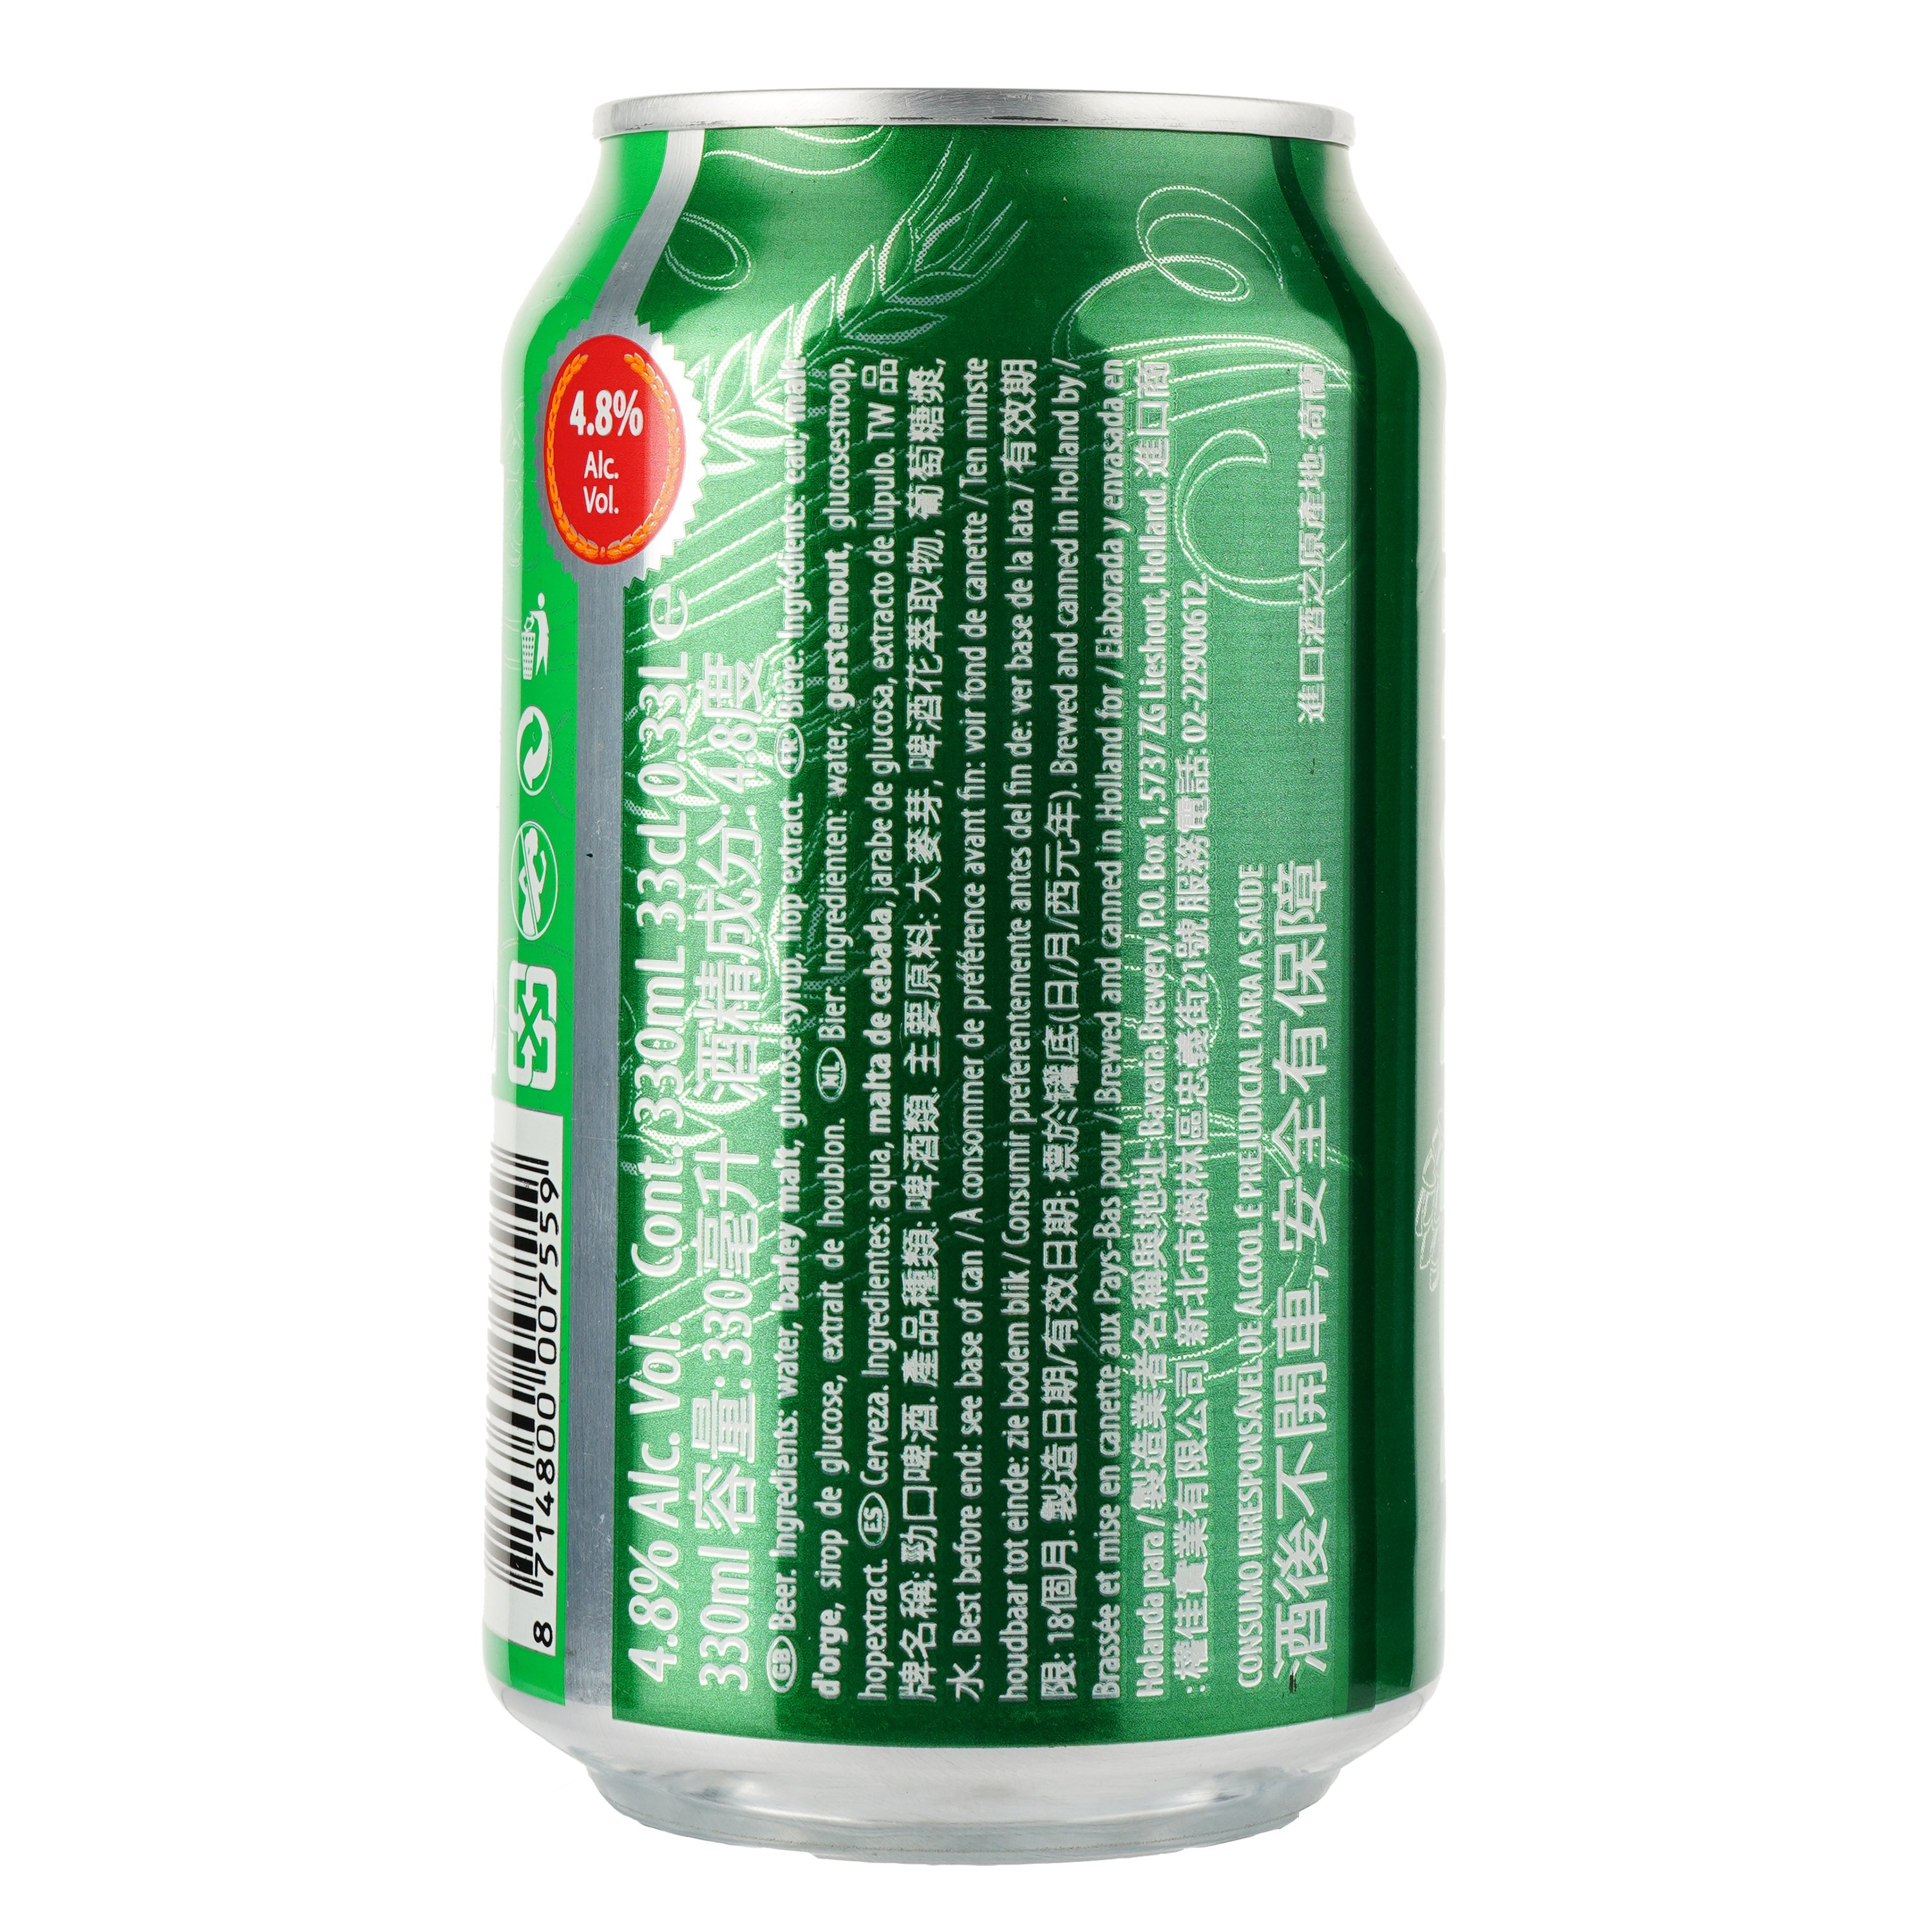 Пиво Holland Import, світле, фільтроване, 4,8%, з/б, 0,33 л - фото 2